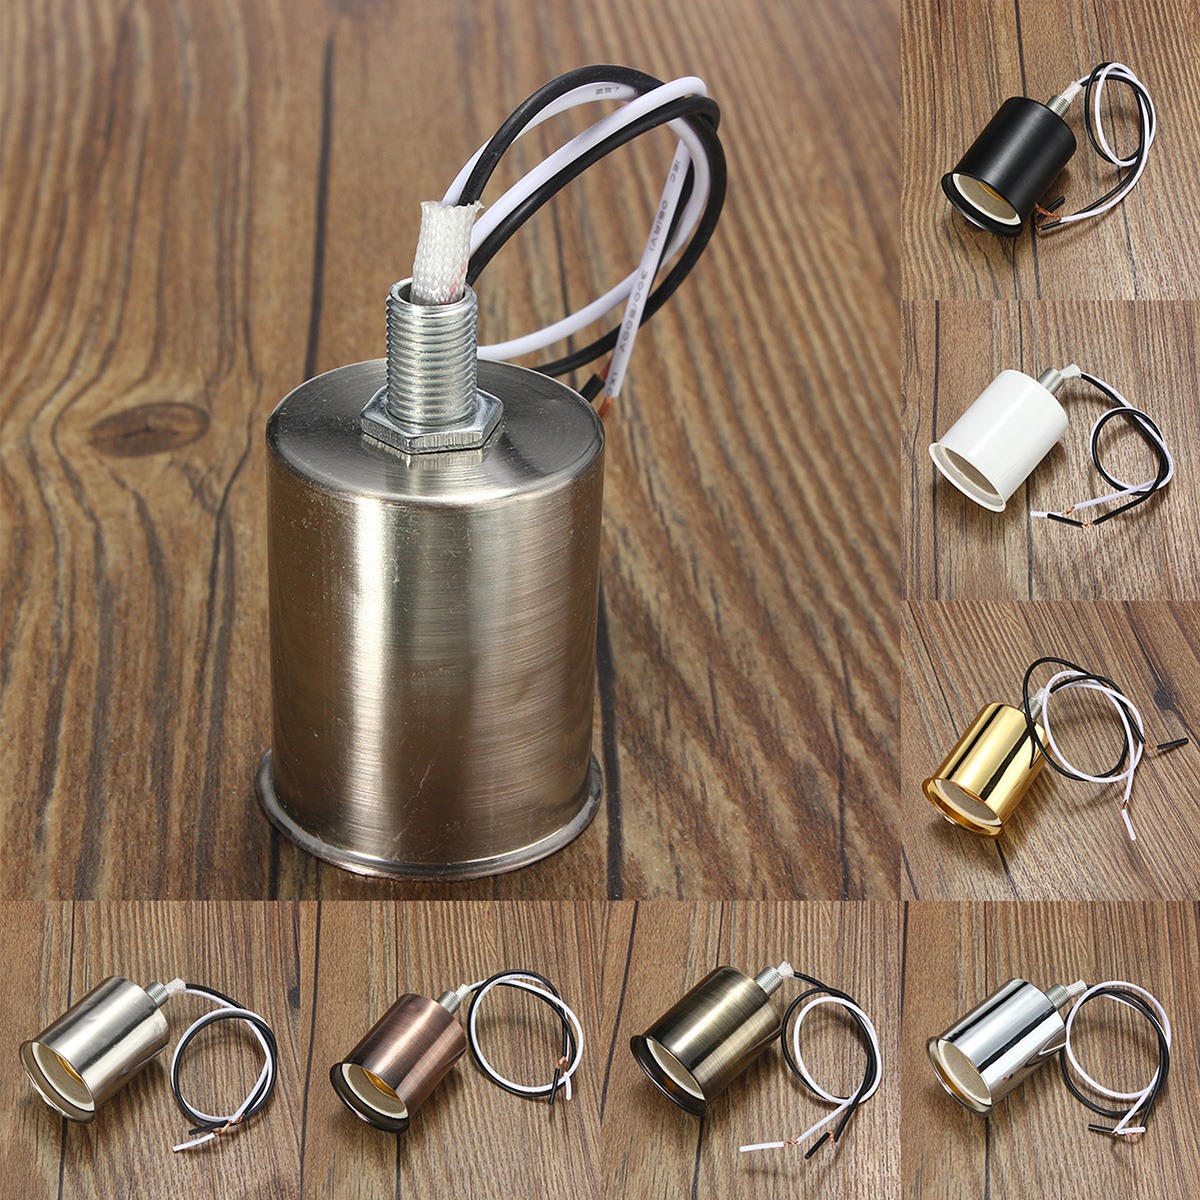 E27-Retro-Vintage-Edison-Ceramic-Screw-Round-Shape-Bulb-Adapter-Hang-Lamp-Holder-Light-Socket-Fittin-1428765-1